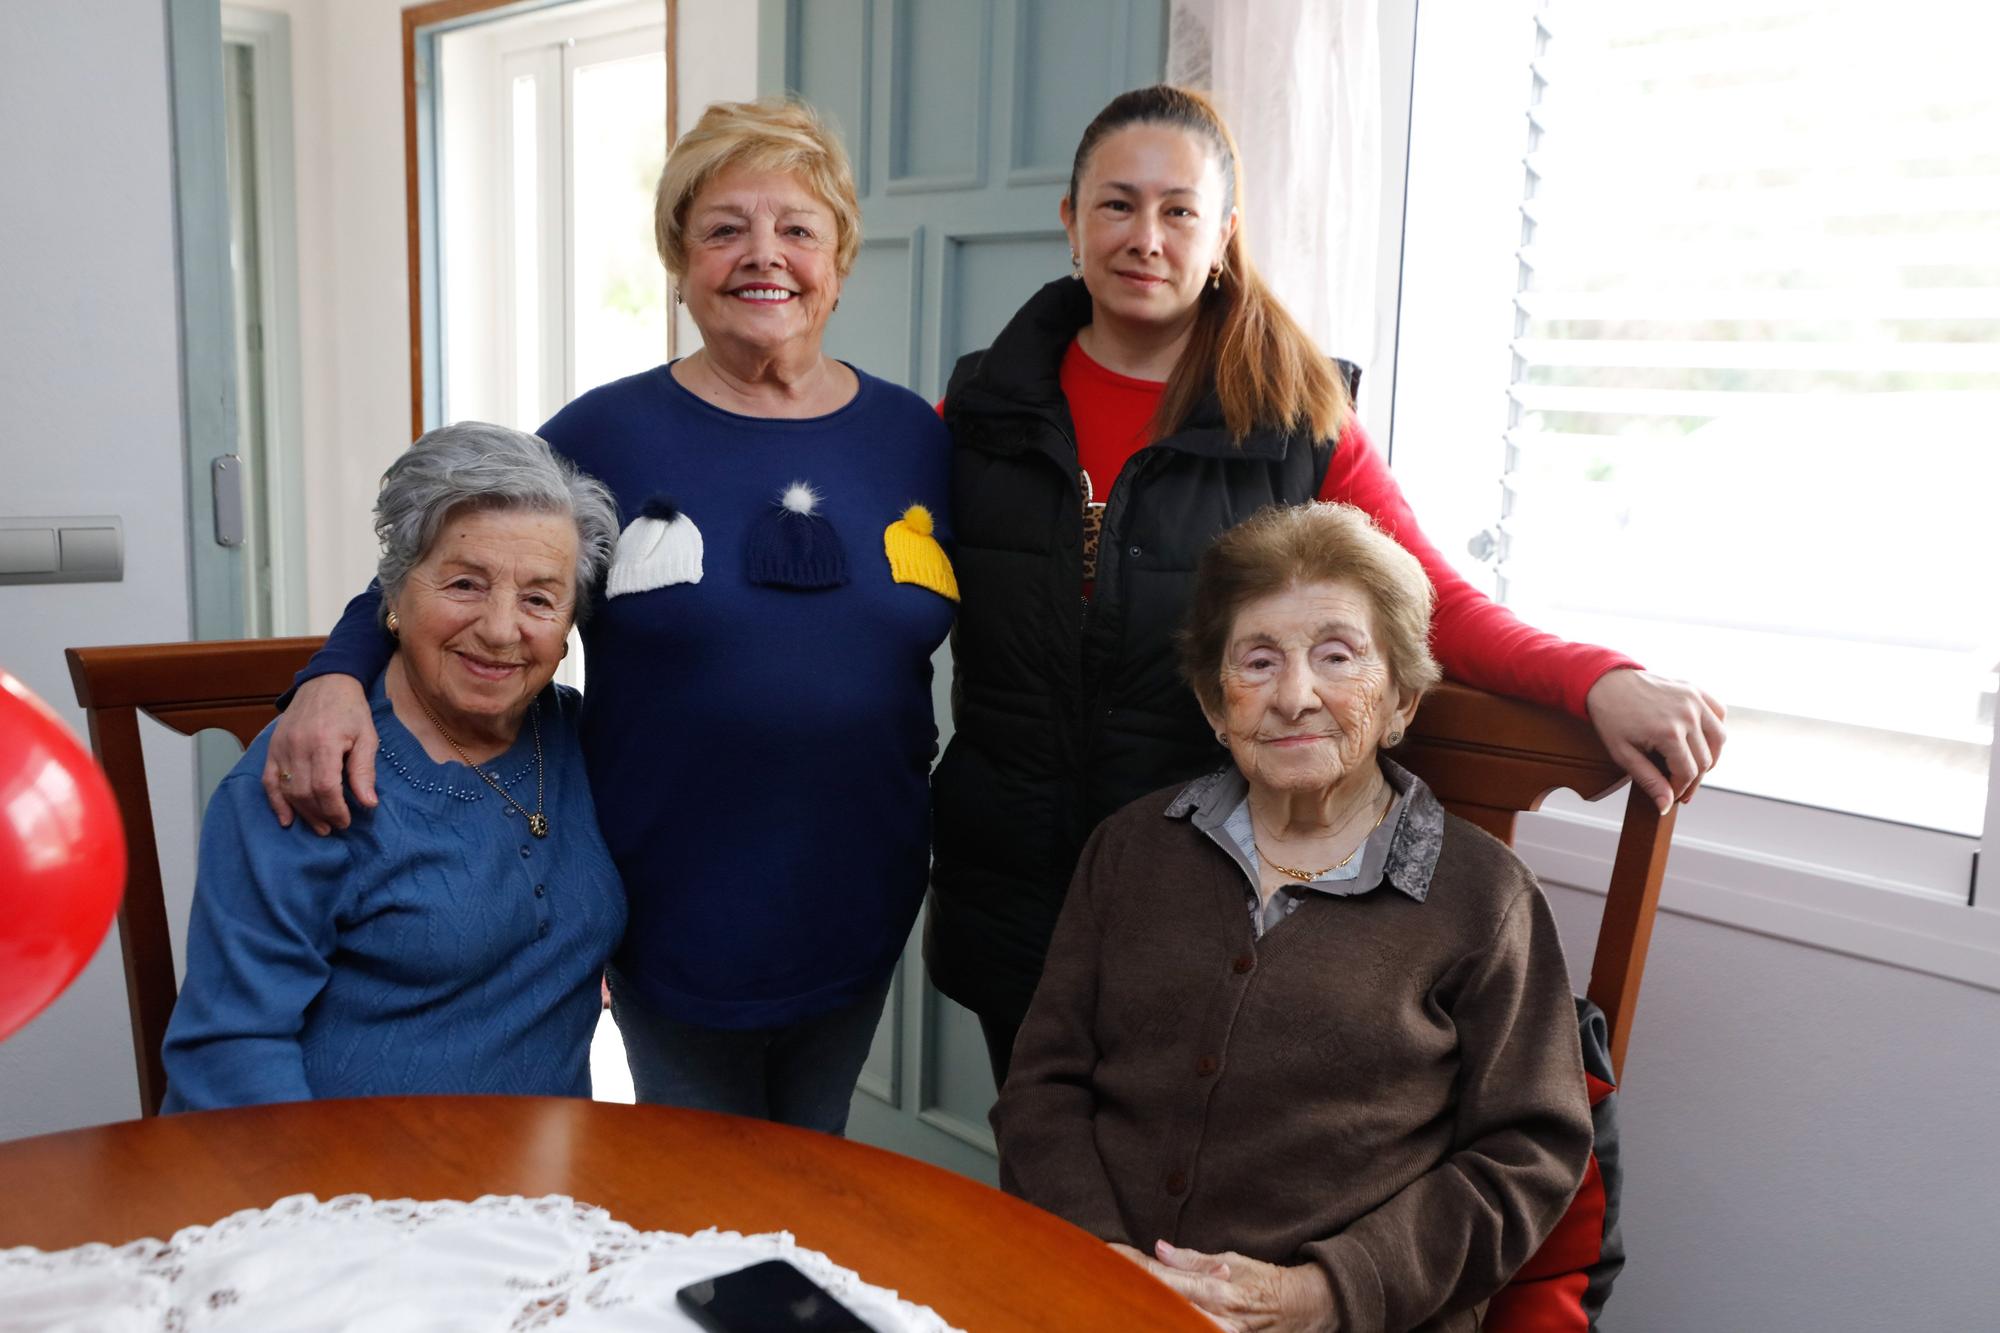 La extraordinaria longevidad de las hermanas de Can Fèlix